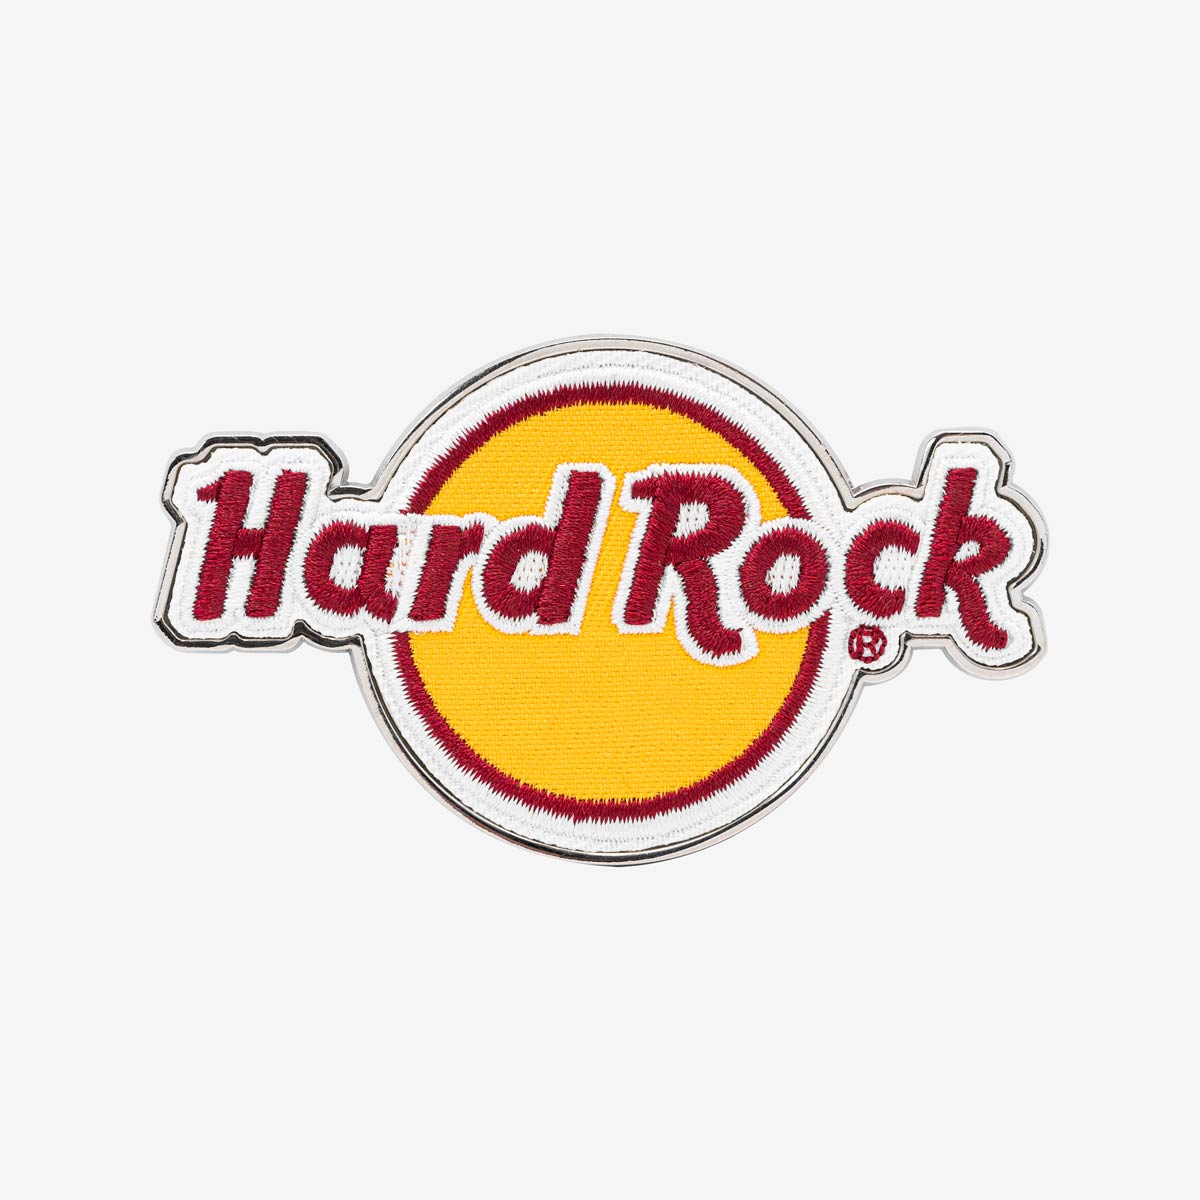 Hard Rock Cafe Raised Logo Patch Magnet image number 1